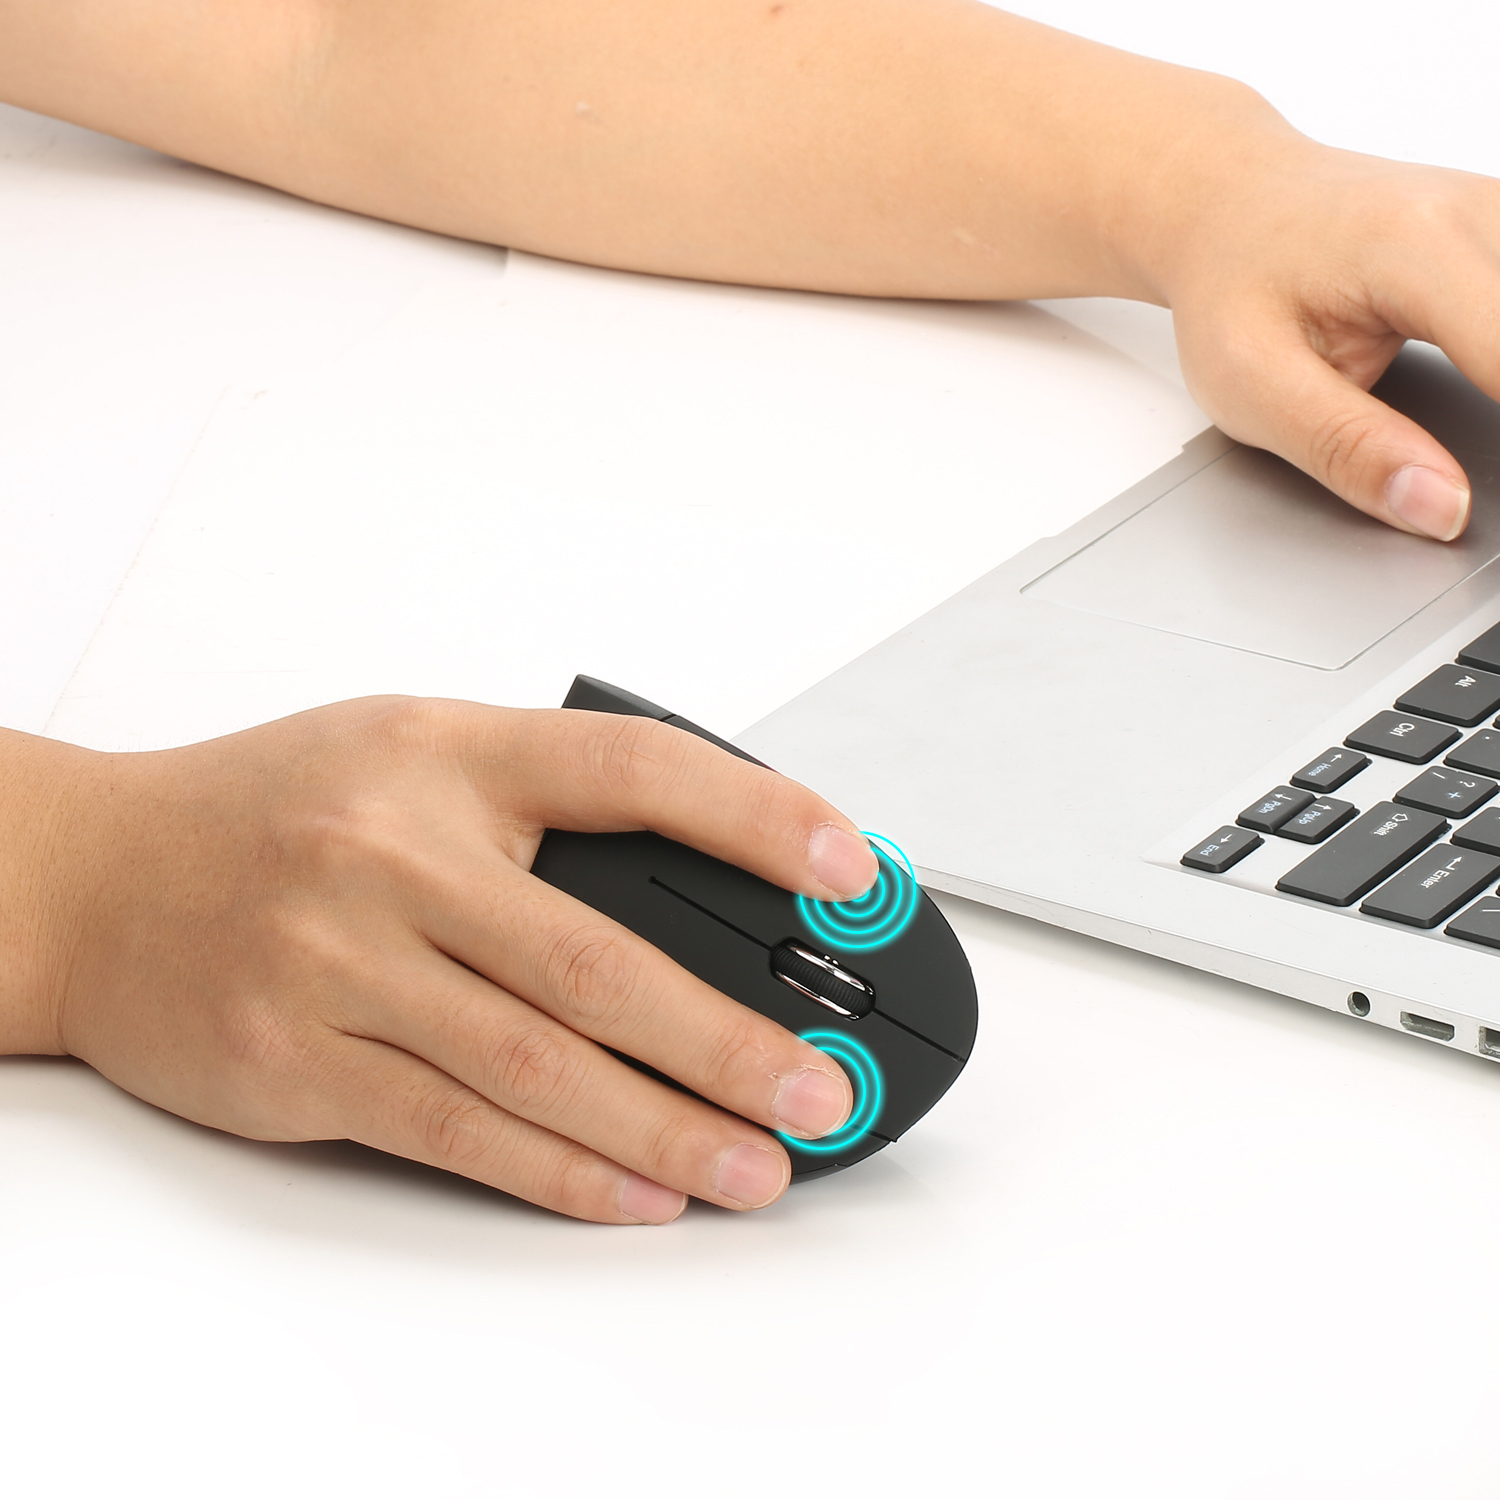 best wireless ergonomic keyboard 2016 for wrist pain